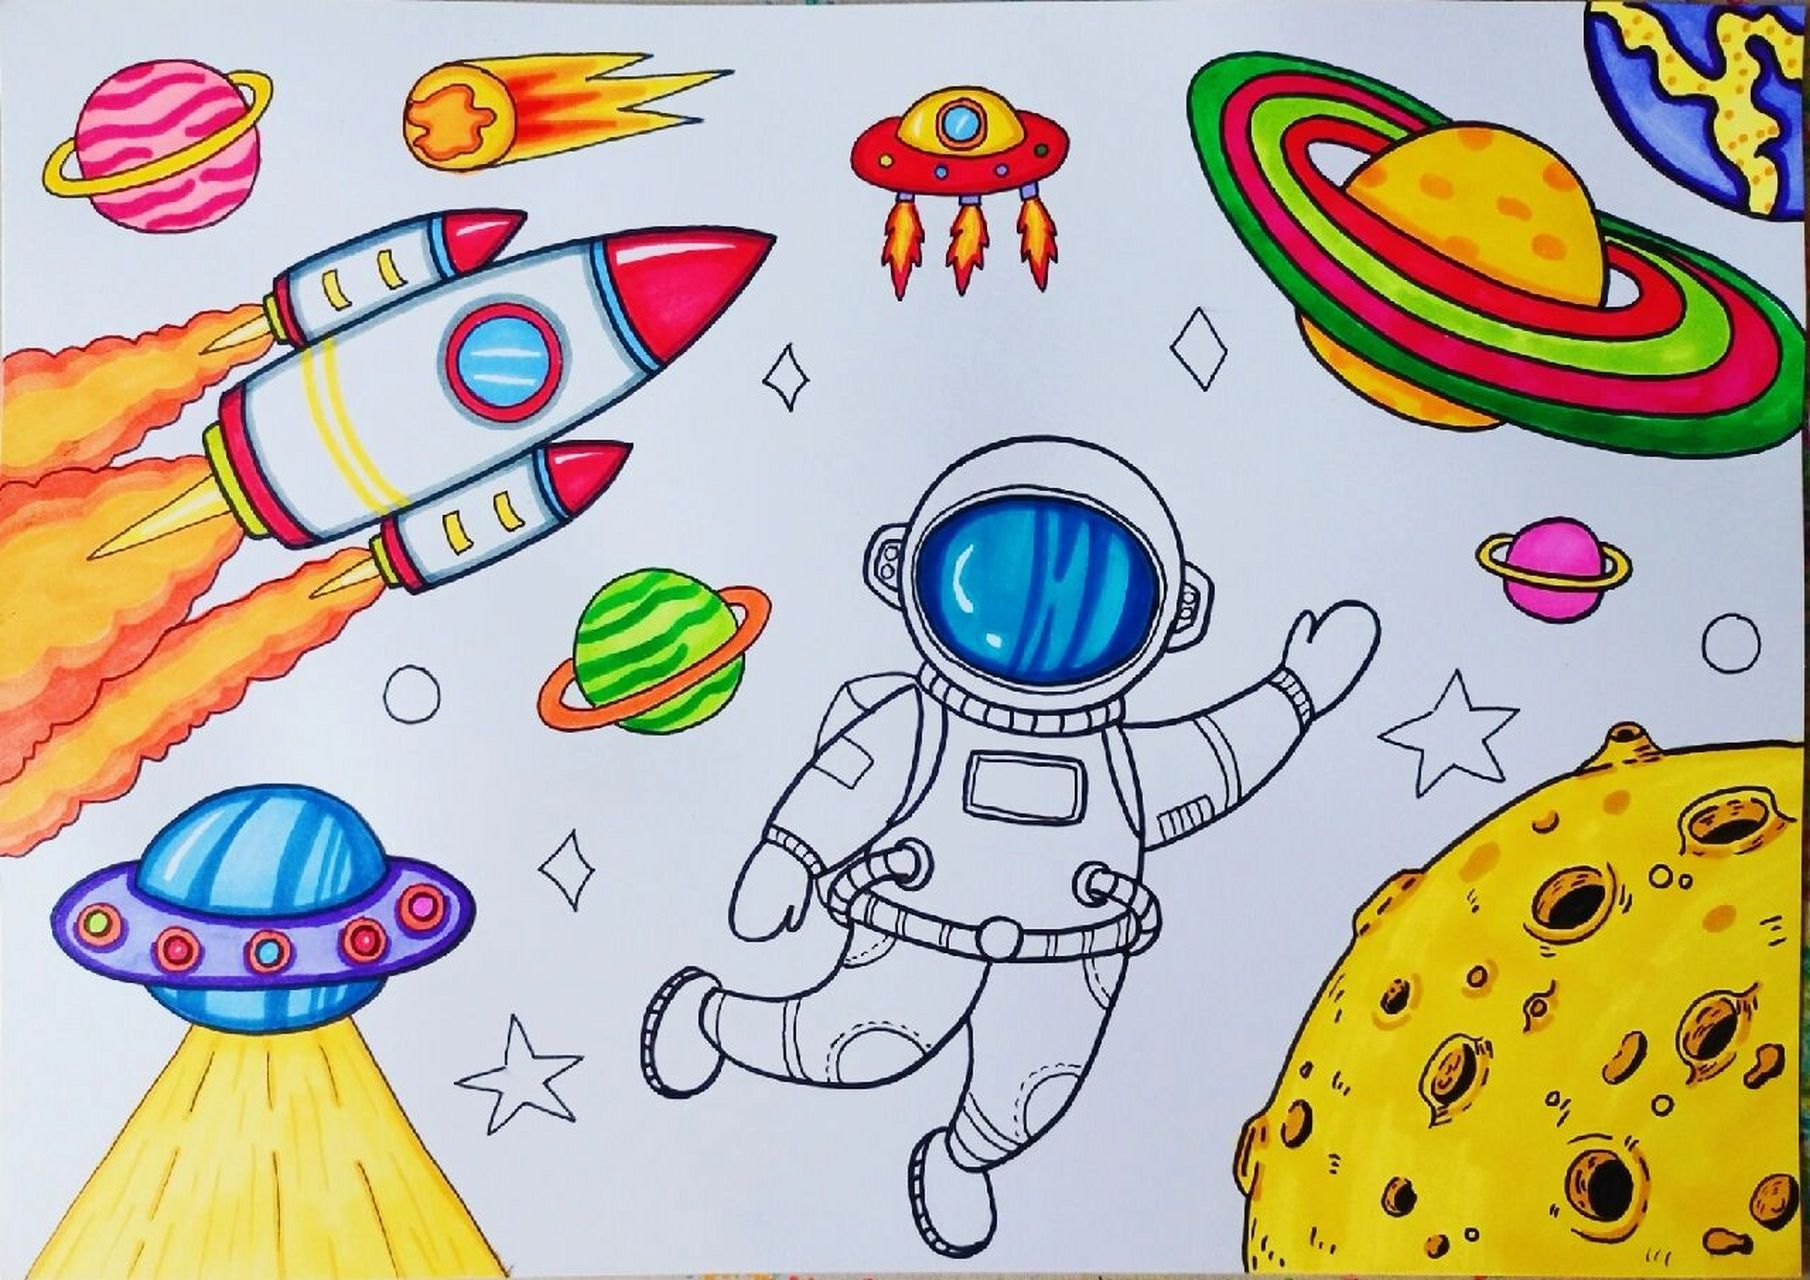 《太空》主题画 遨游太空,太空主题画,科幻画     宇航员绘画